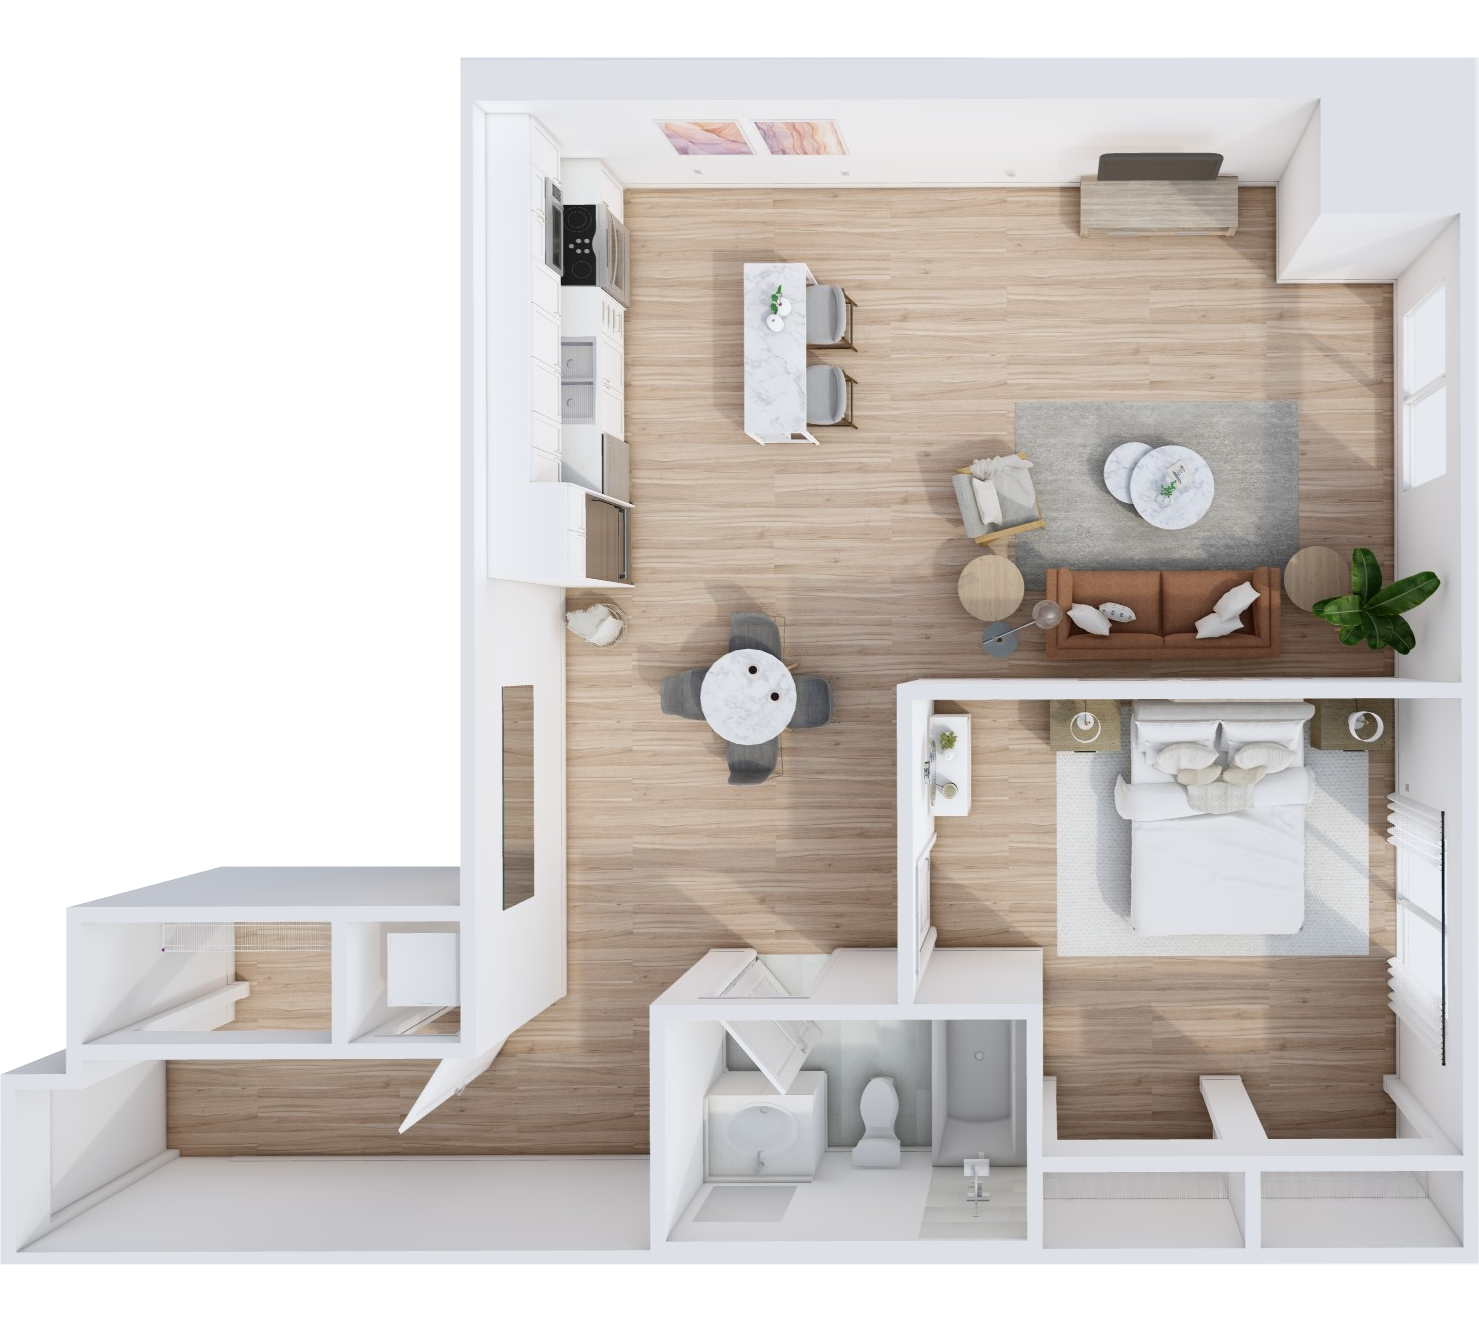 Highlands One-Bedroom floor plan